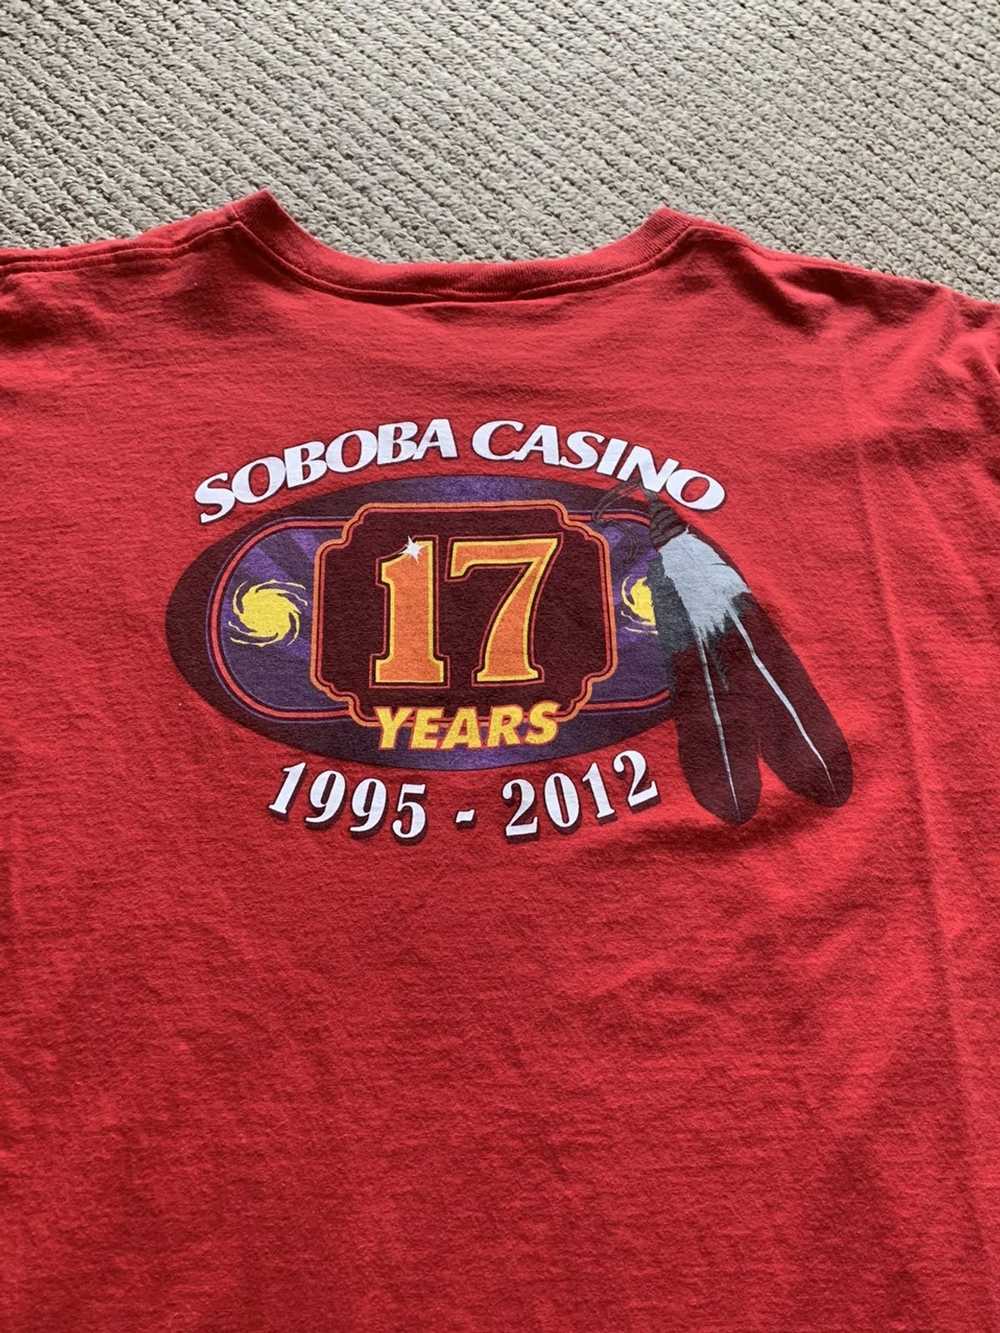 Vintage Vintage Soboba Casino t shirt - image 1